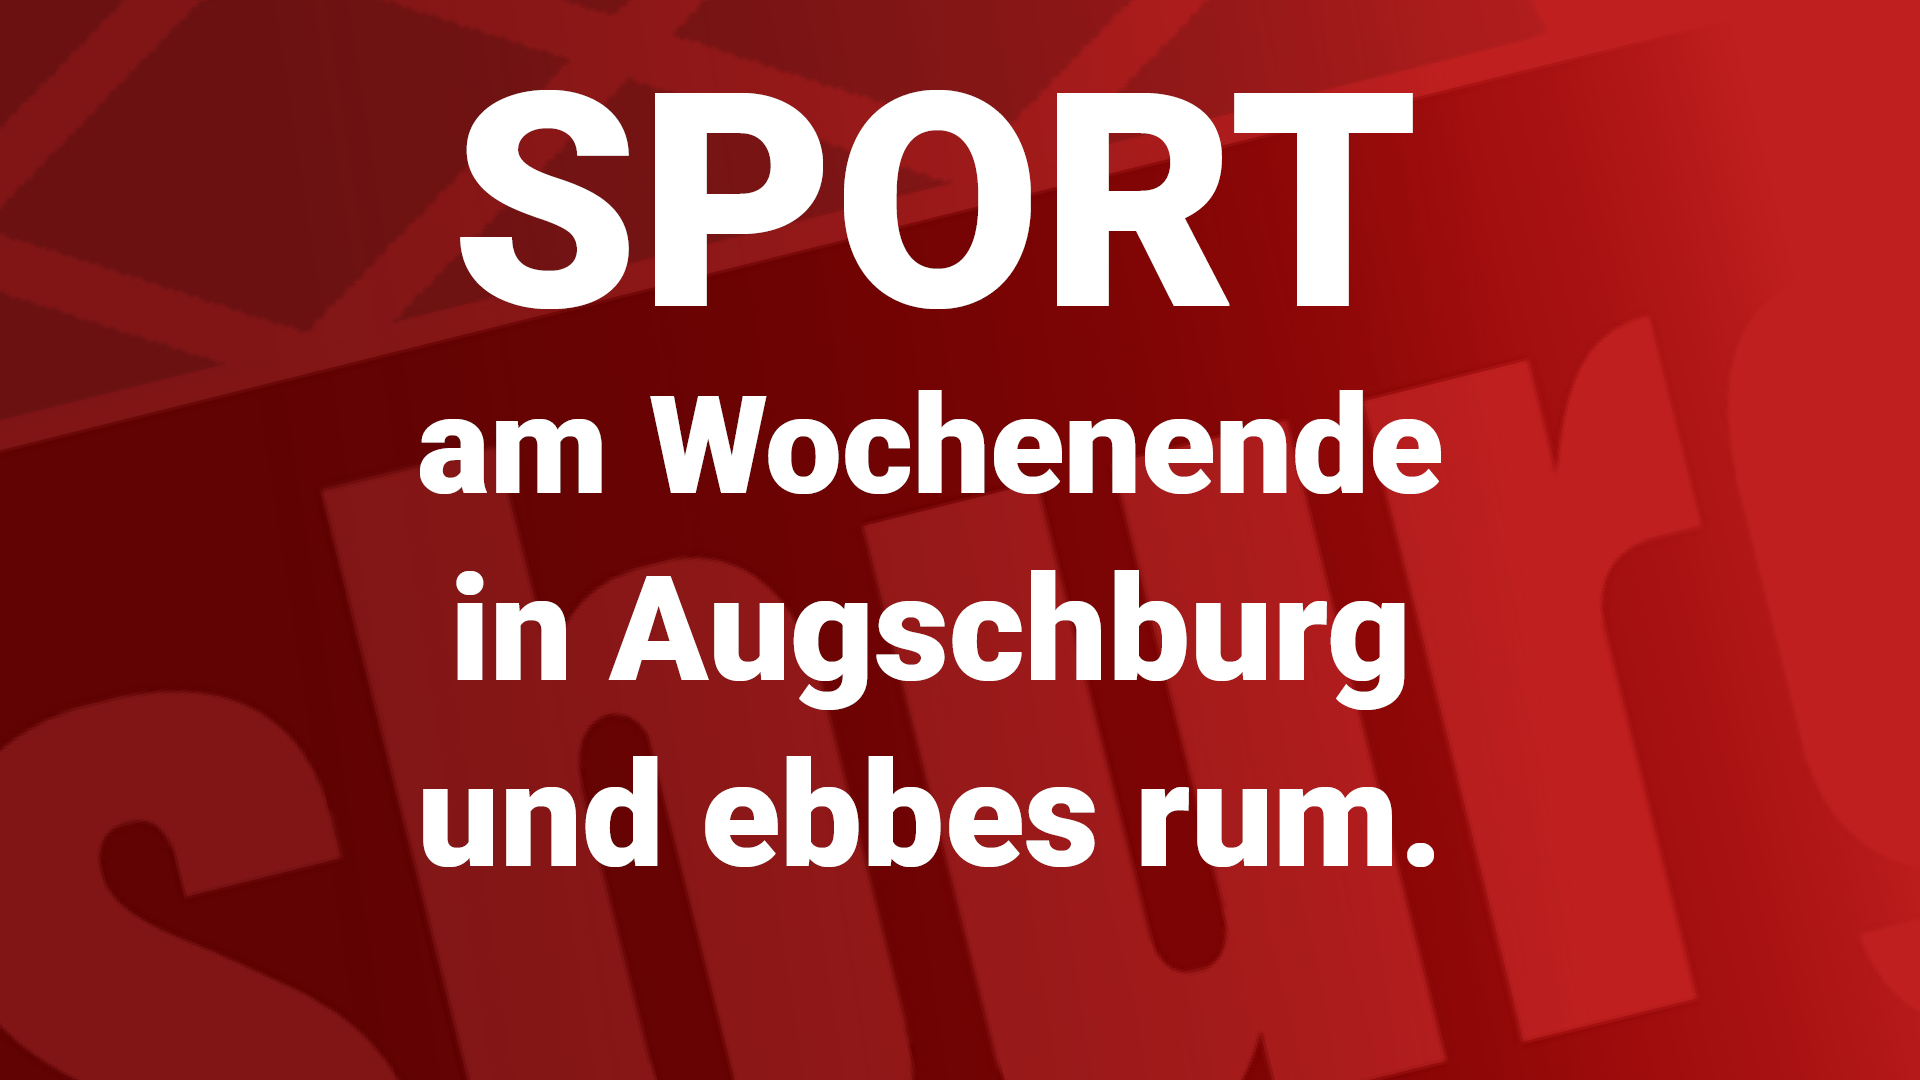 Bundesliga-Radball, Eiskunstlauf, Kunstradfahren oder ein traditionelles Hallenfußball-Turnier mit Bande sind so einige Highlights abseits der Mainstreamsportarten. Denn während sich der FC Augsburg in der WWK-Arena sich dem Meister aus München stellt, gibt es abseits der großen Arenen auch vieles zu entdecken. 